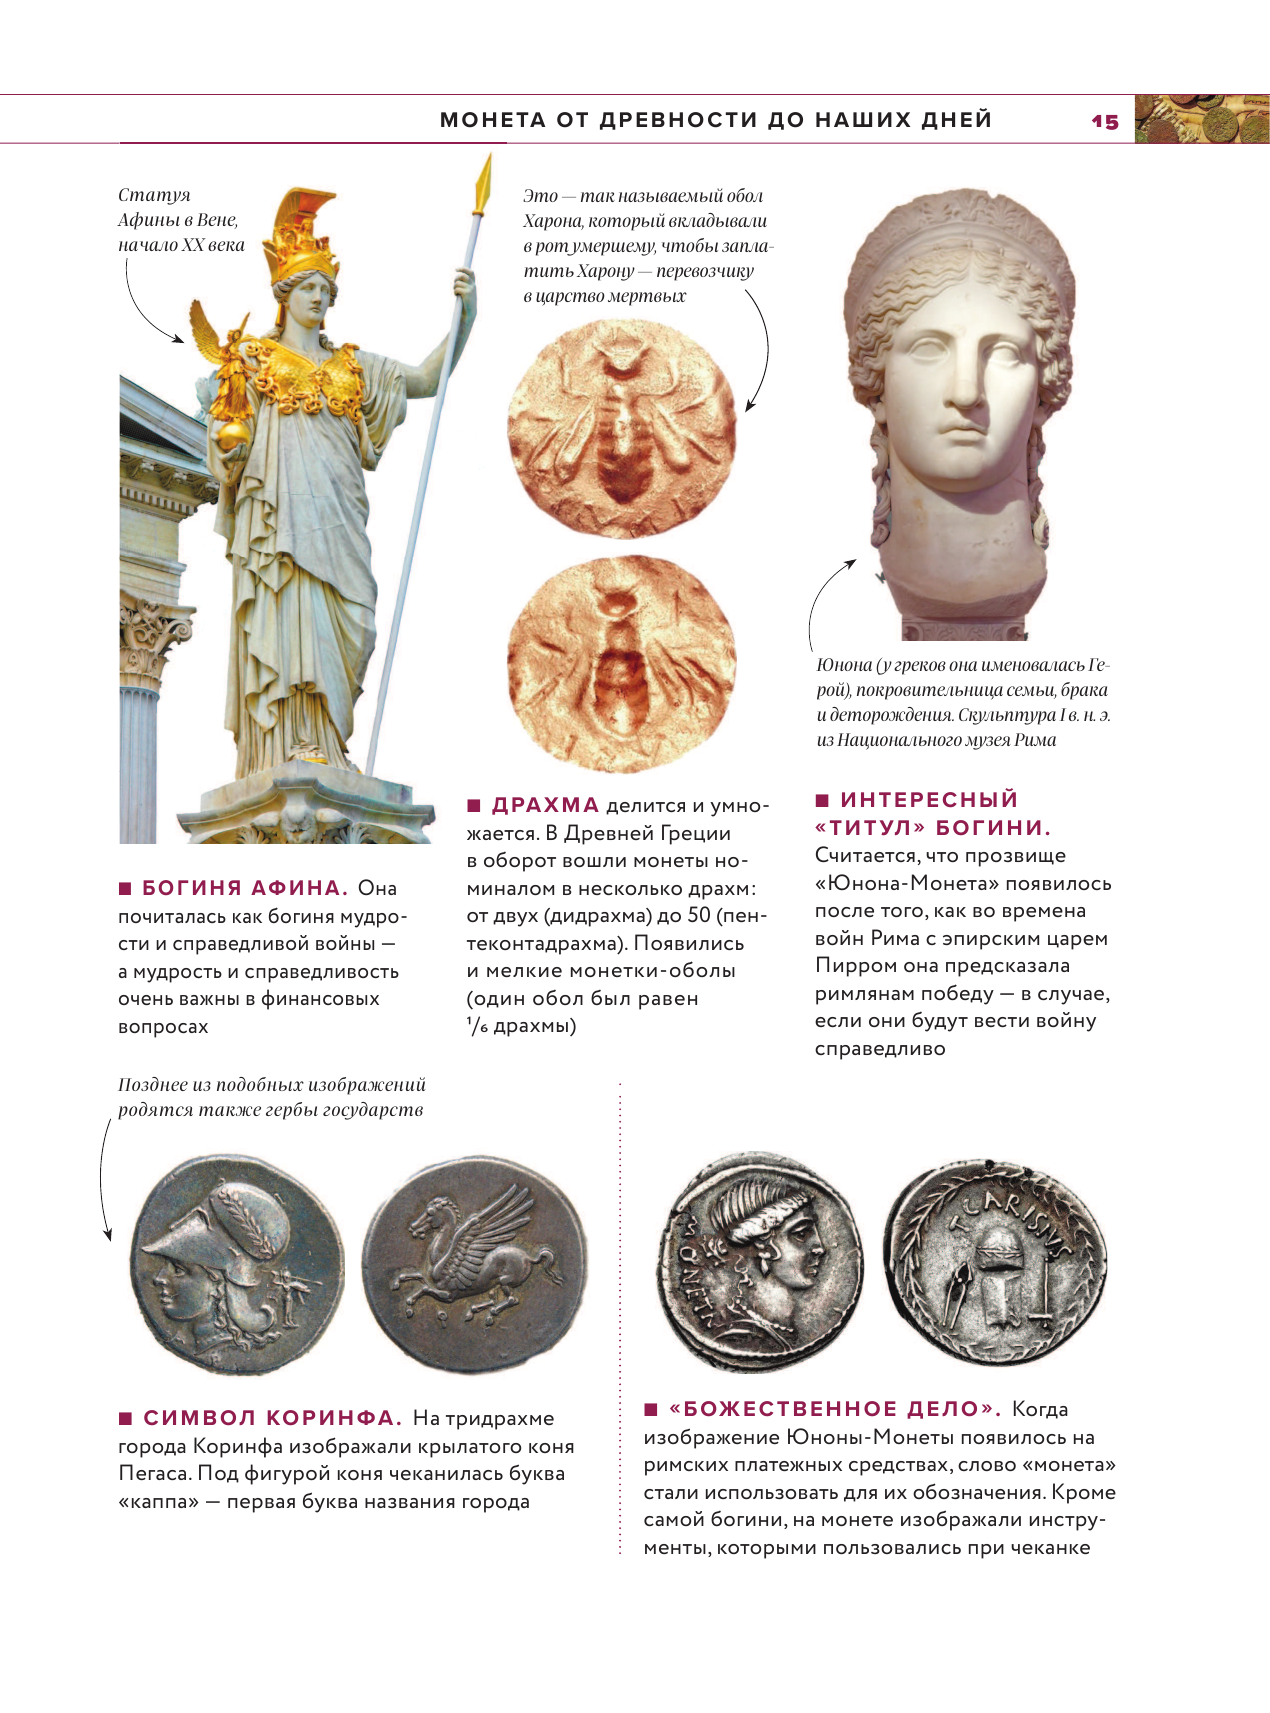 Монеты мира. Визуальная история развития мировой нумизматики от древности до наших дней - фото №18